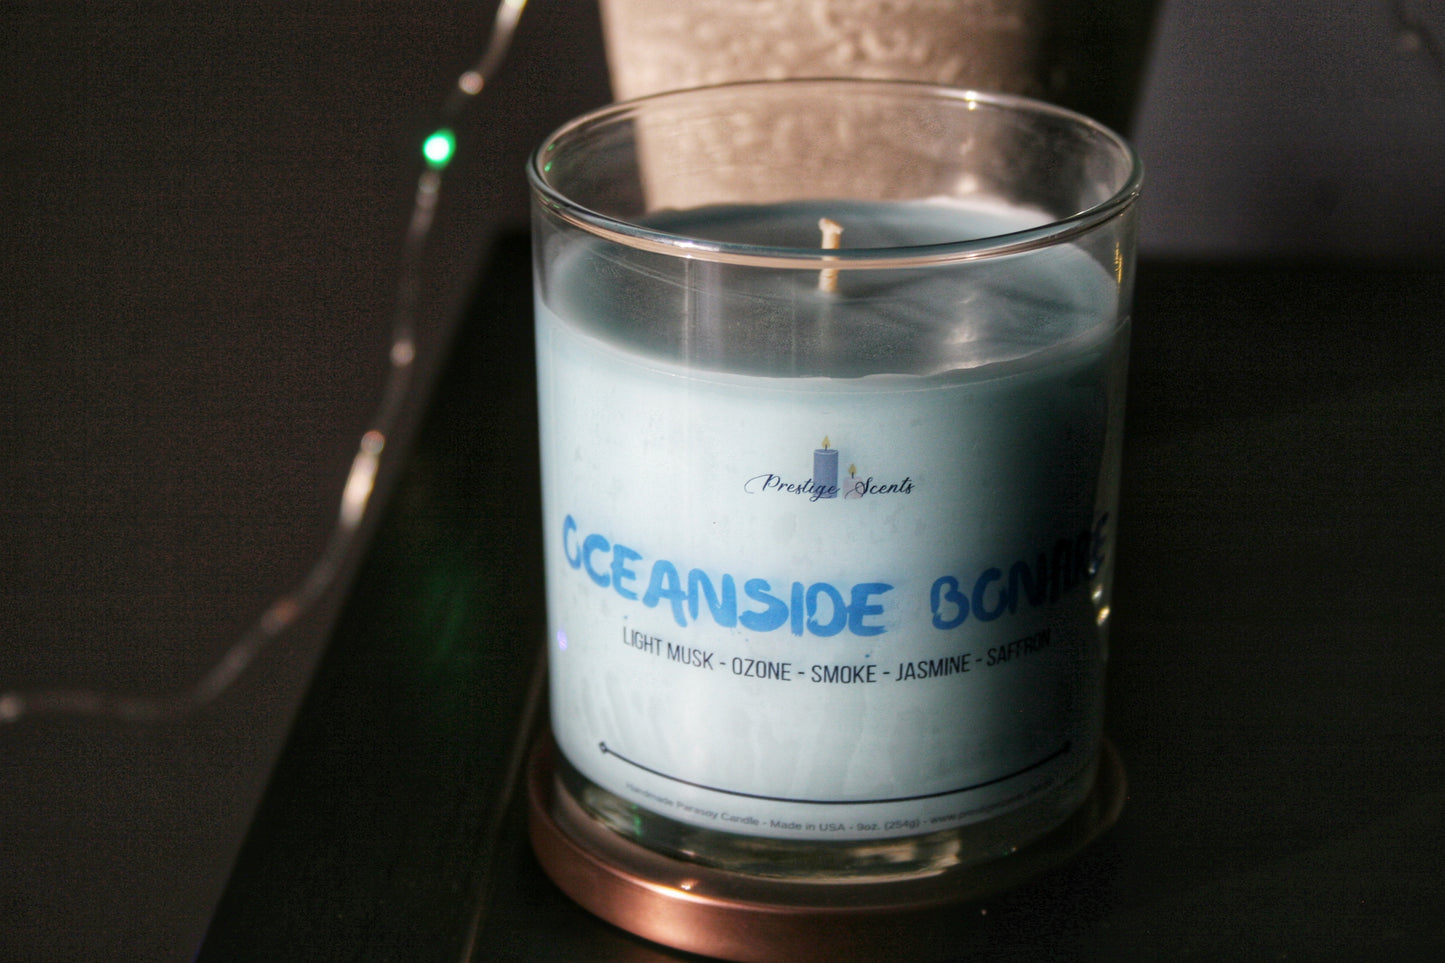 Oceanside Bonfire Candle